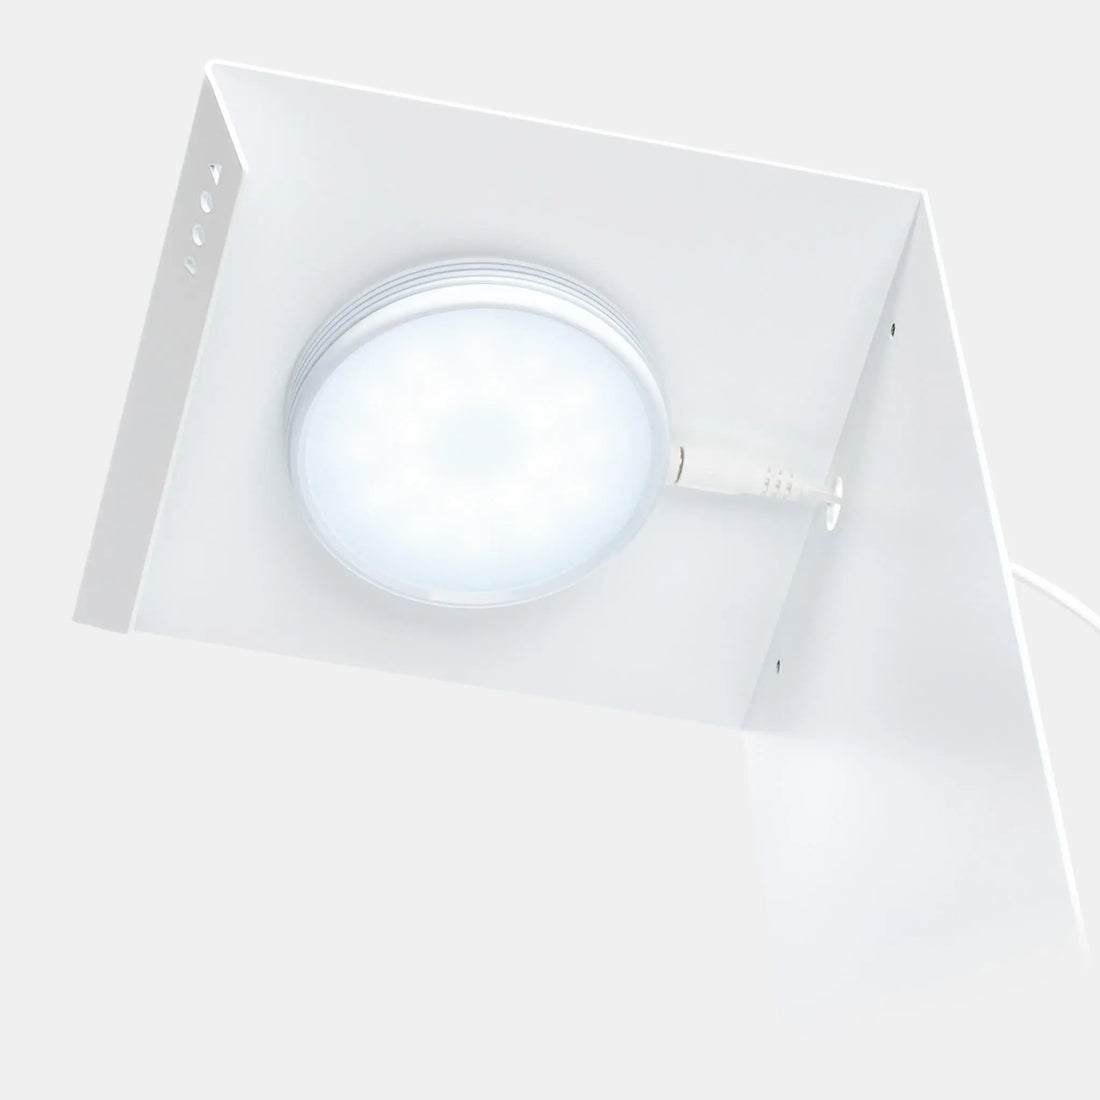 DOOA Magnet Light Stand 20L - Aqua Essentials